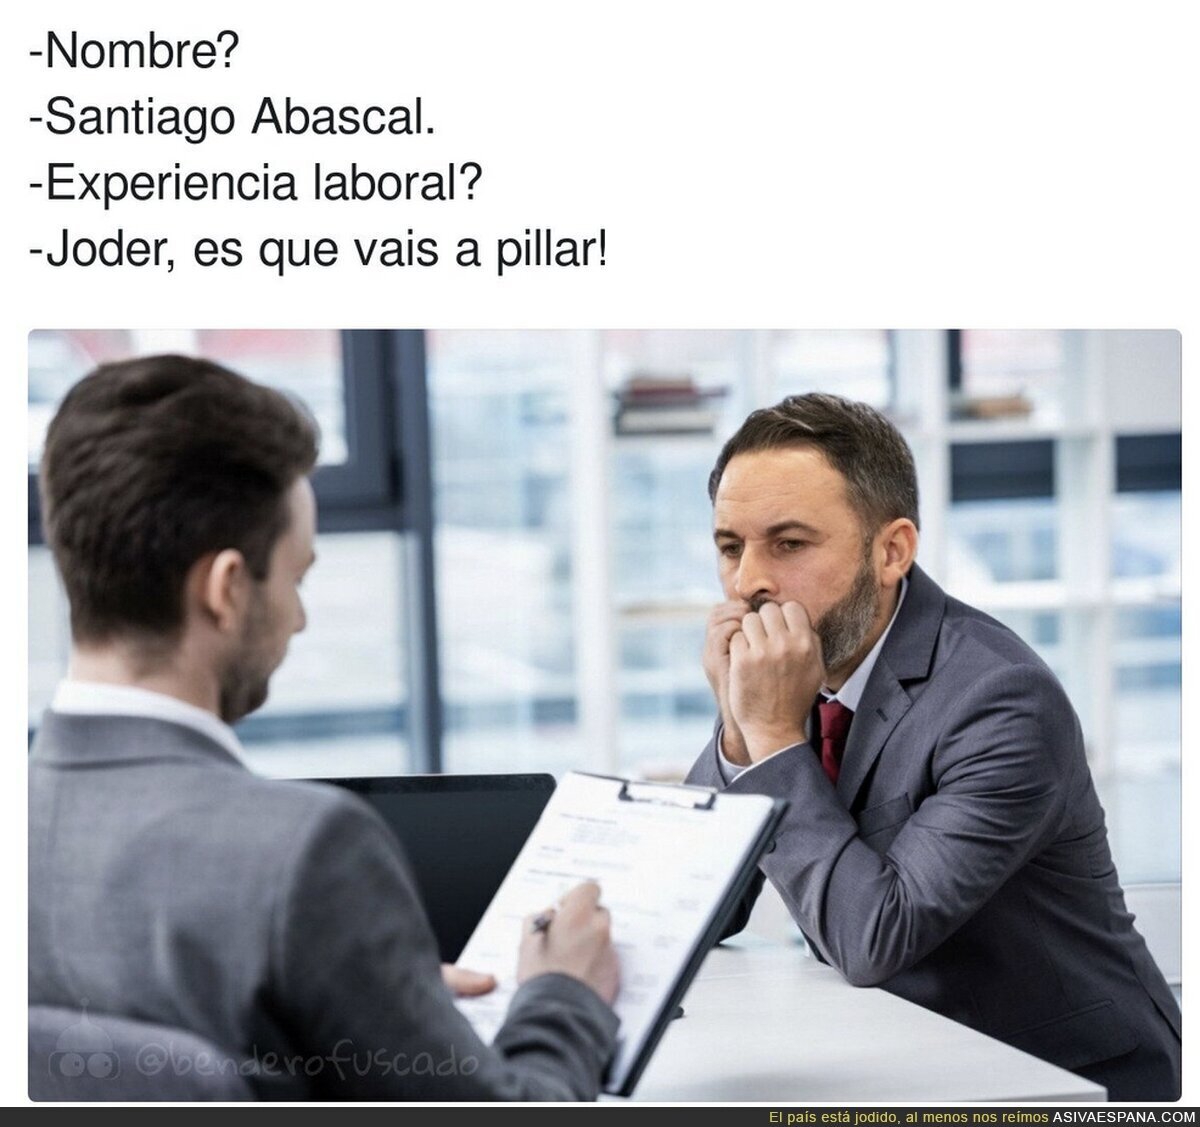 Santiago Abascal en una entrevista de trabajo